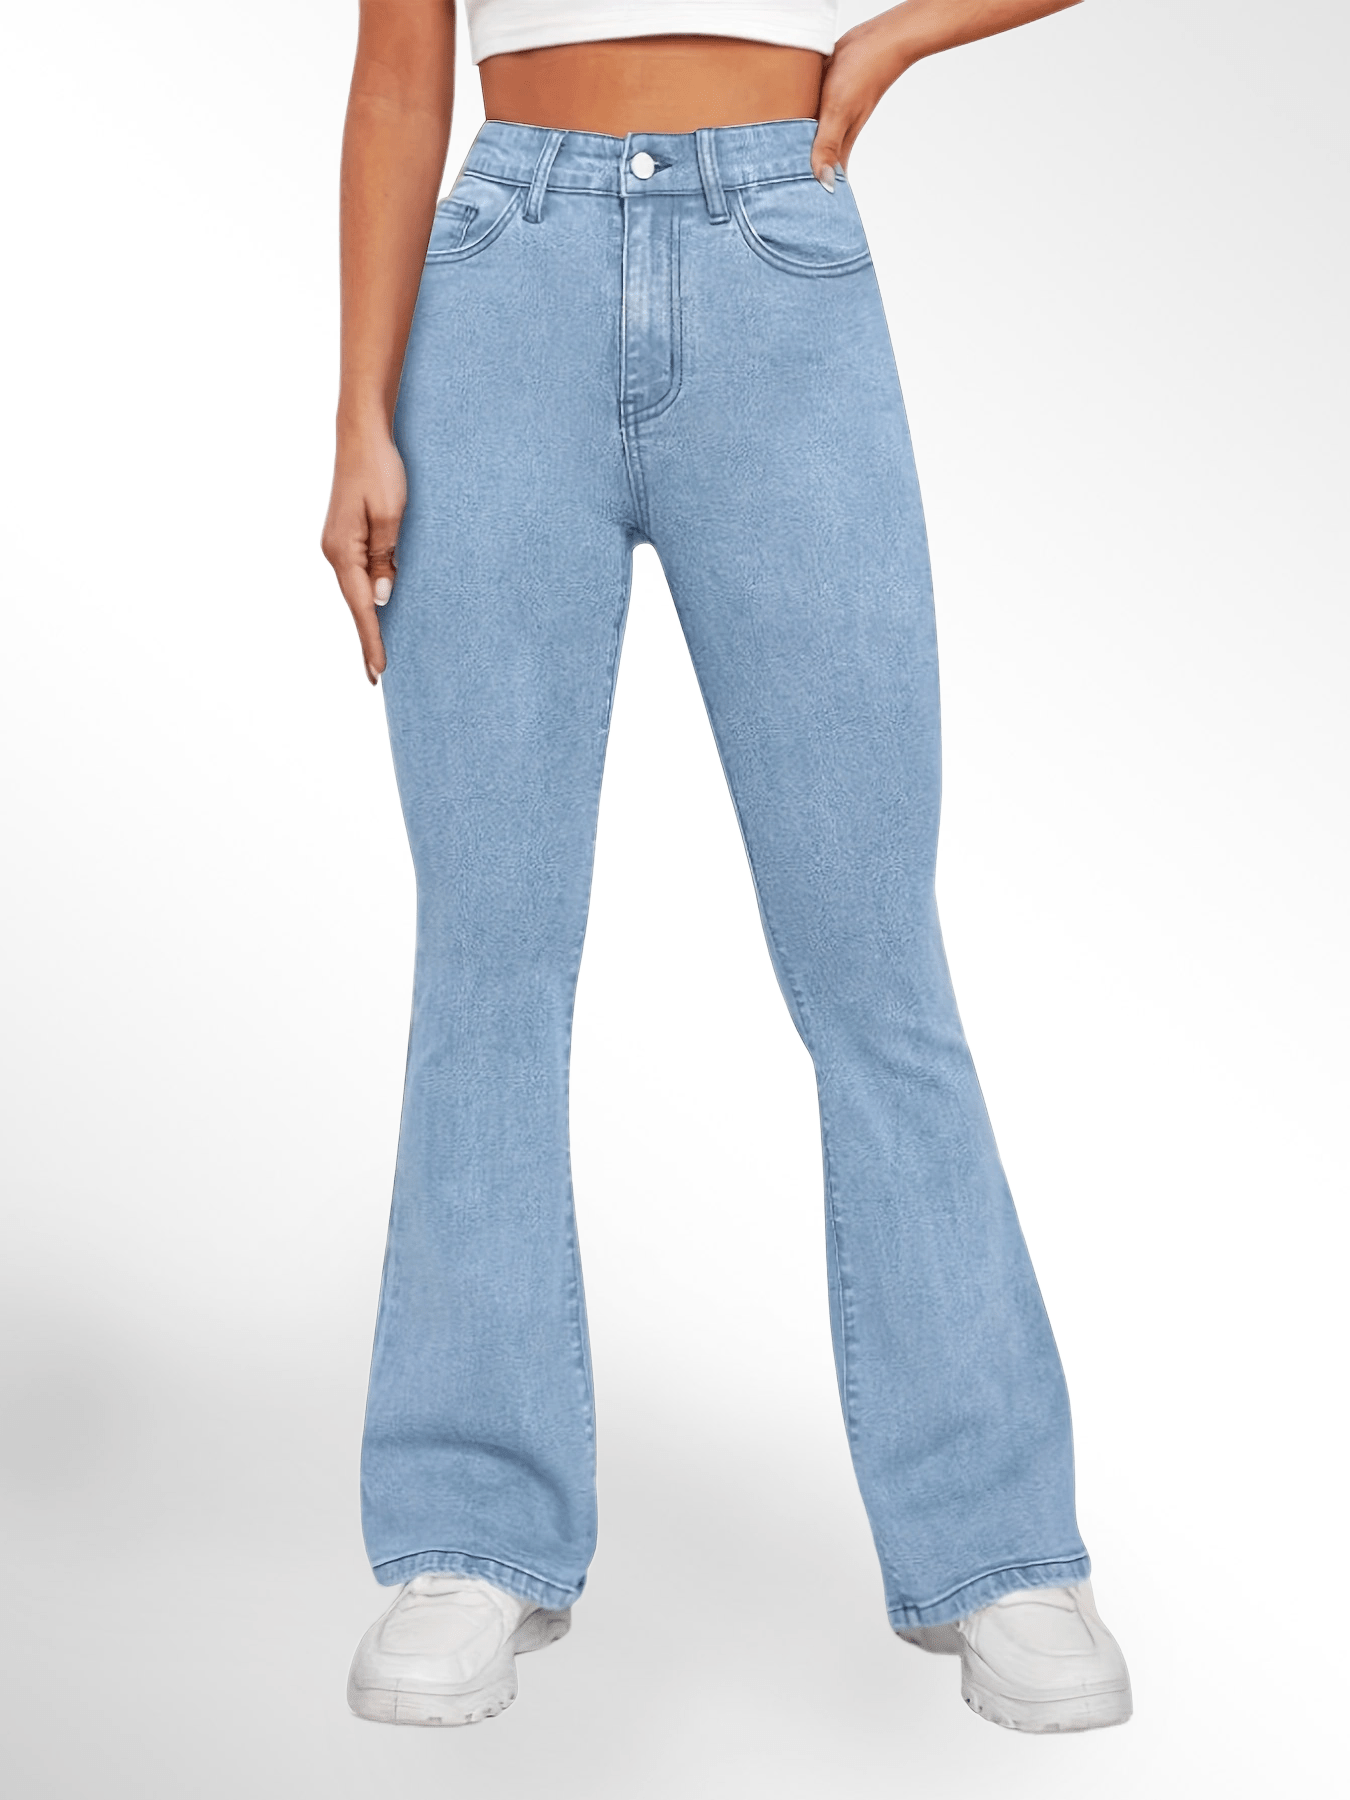 「lovevop」High Waist High Strech Light Blue Bootcut Jeans, Zipper Button Closure Flare Leg Causal Denim Pants, Women's Denim Jeans & Clothing